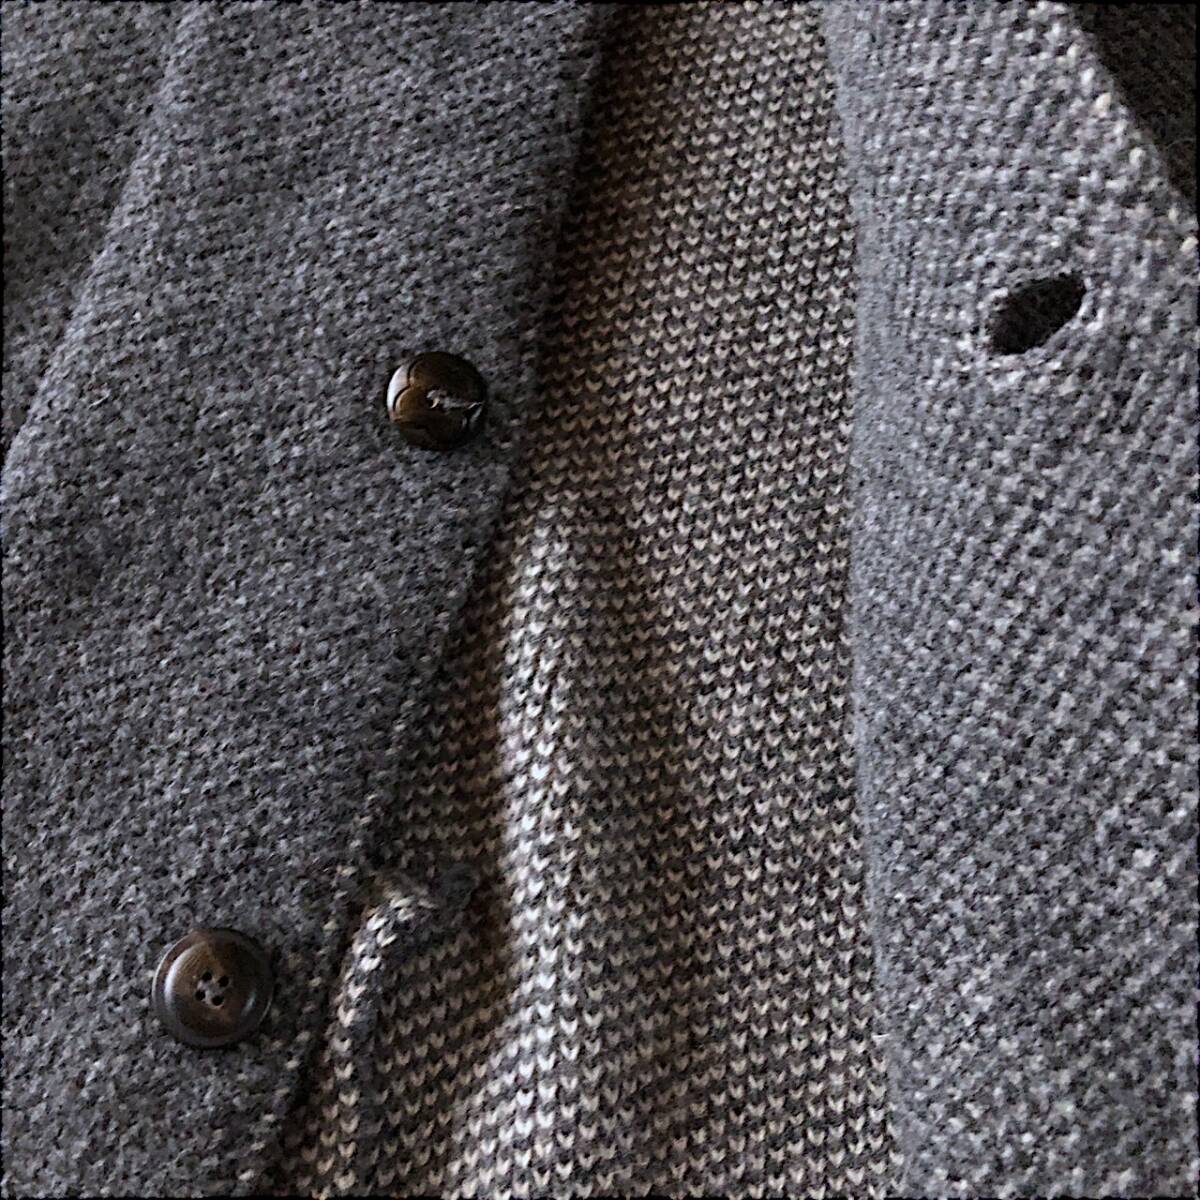 A02 прекрасный товар популярный модель [ Lardini LARDINI]XS надпись M передний и задний (до и после) одиночный вязаный tailored jacket внешний перо ткань эластичный стрейч есть 